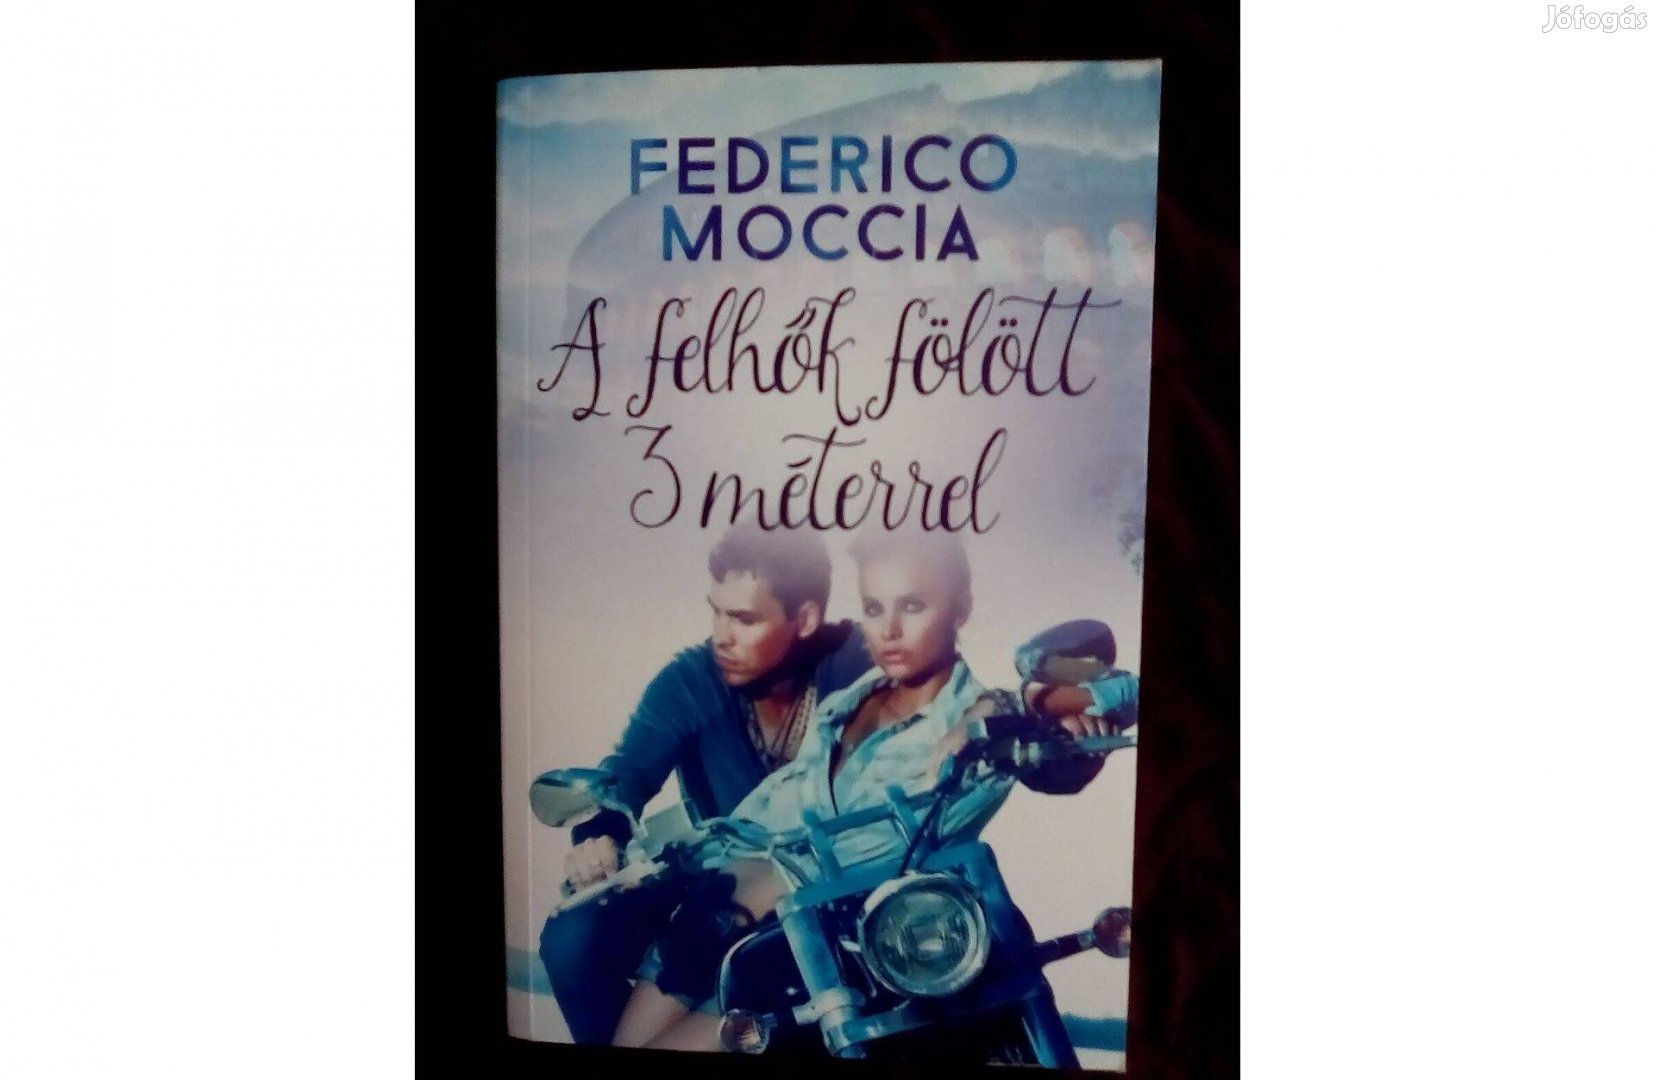 Federico Moccia:A felhők fölött 3 méterrel c. könyv eladó olcsón